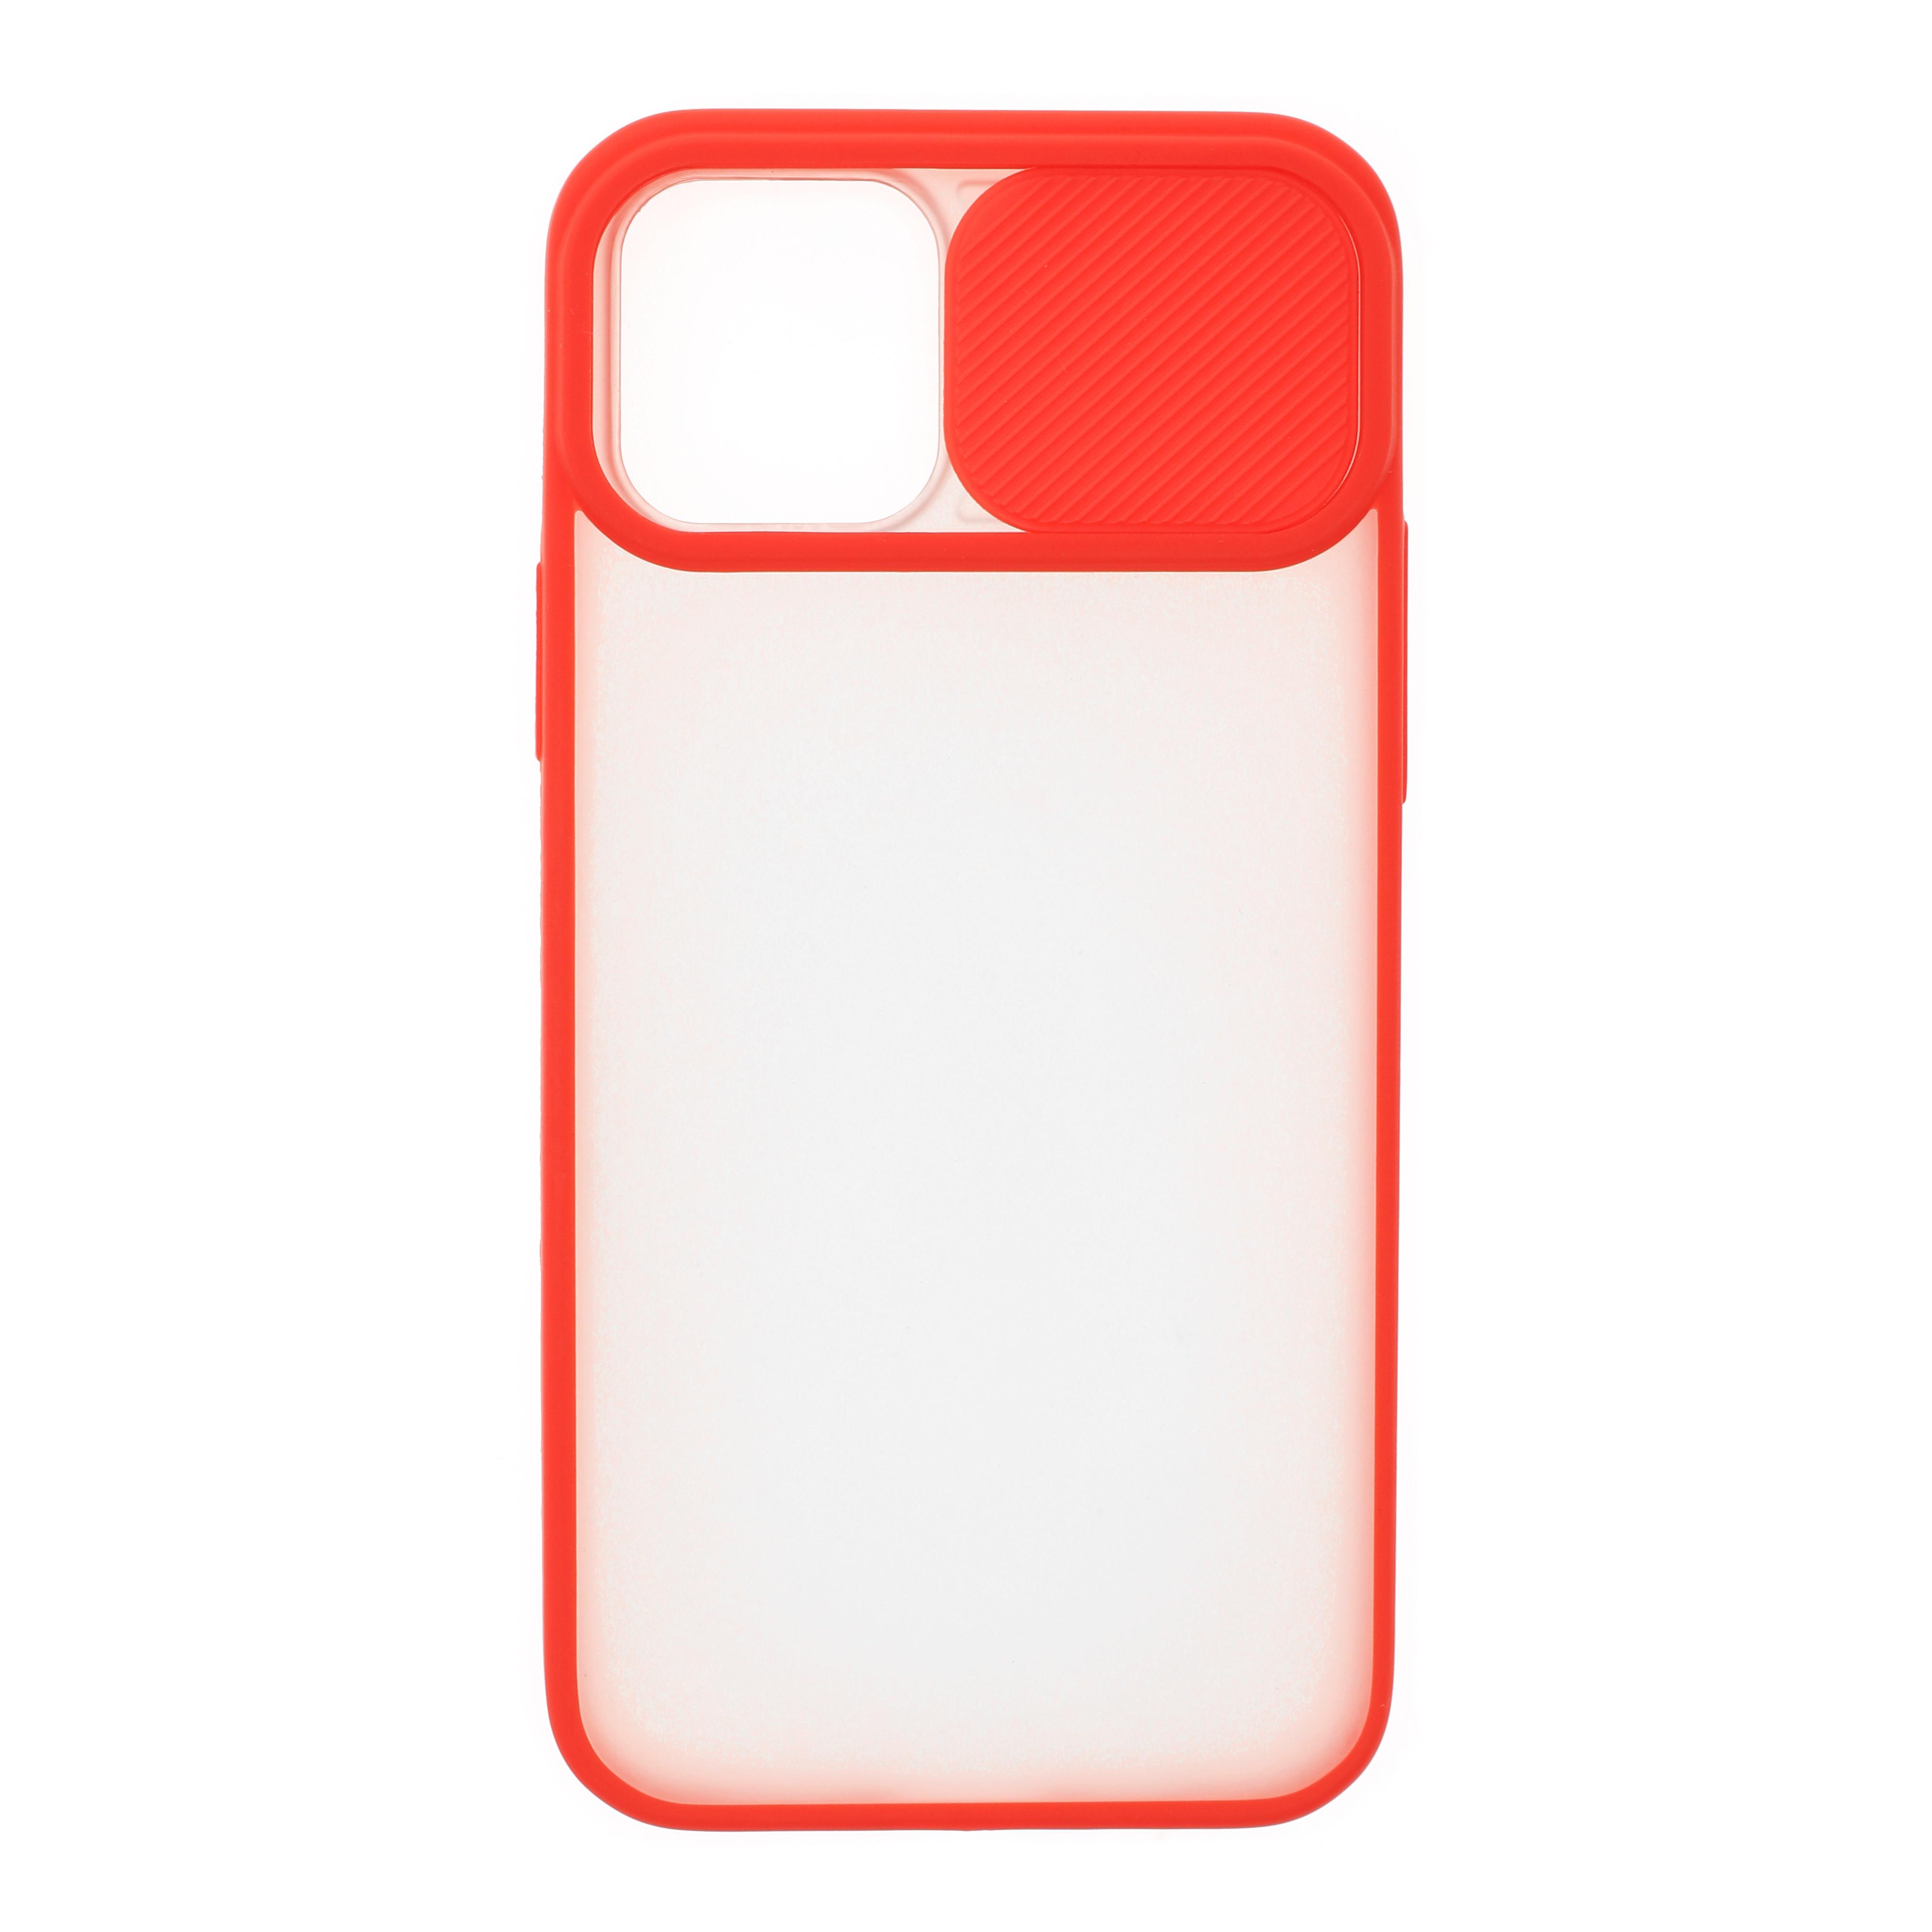 Фото 1 Силиконовый чехол для iPhone 12 mini со шторкой защищающей камеру CG Red